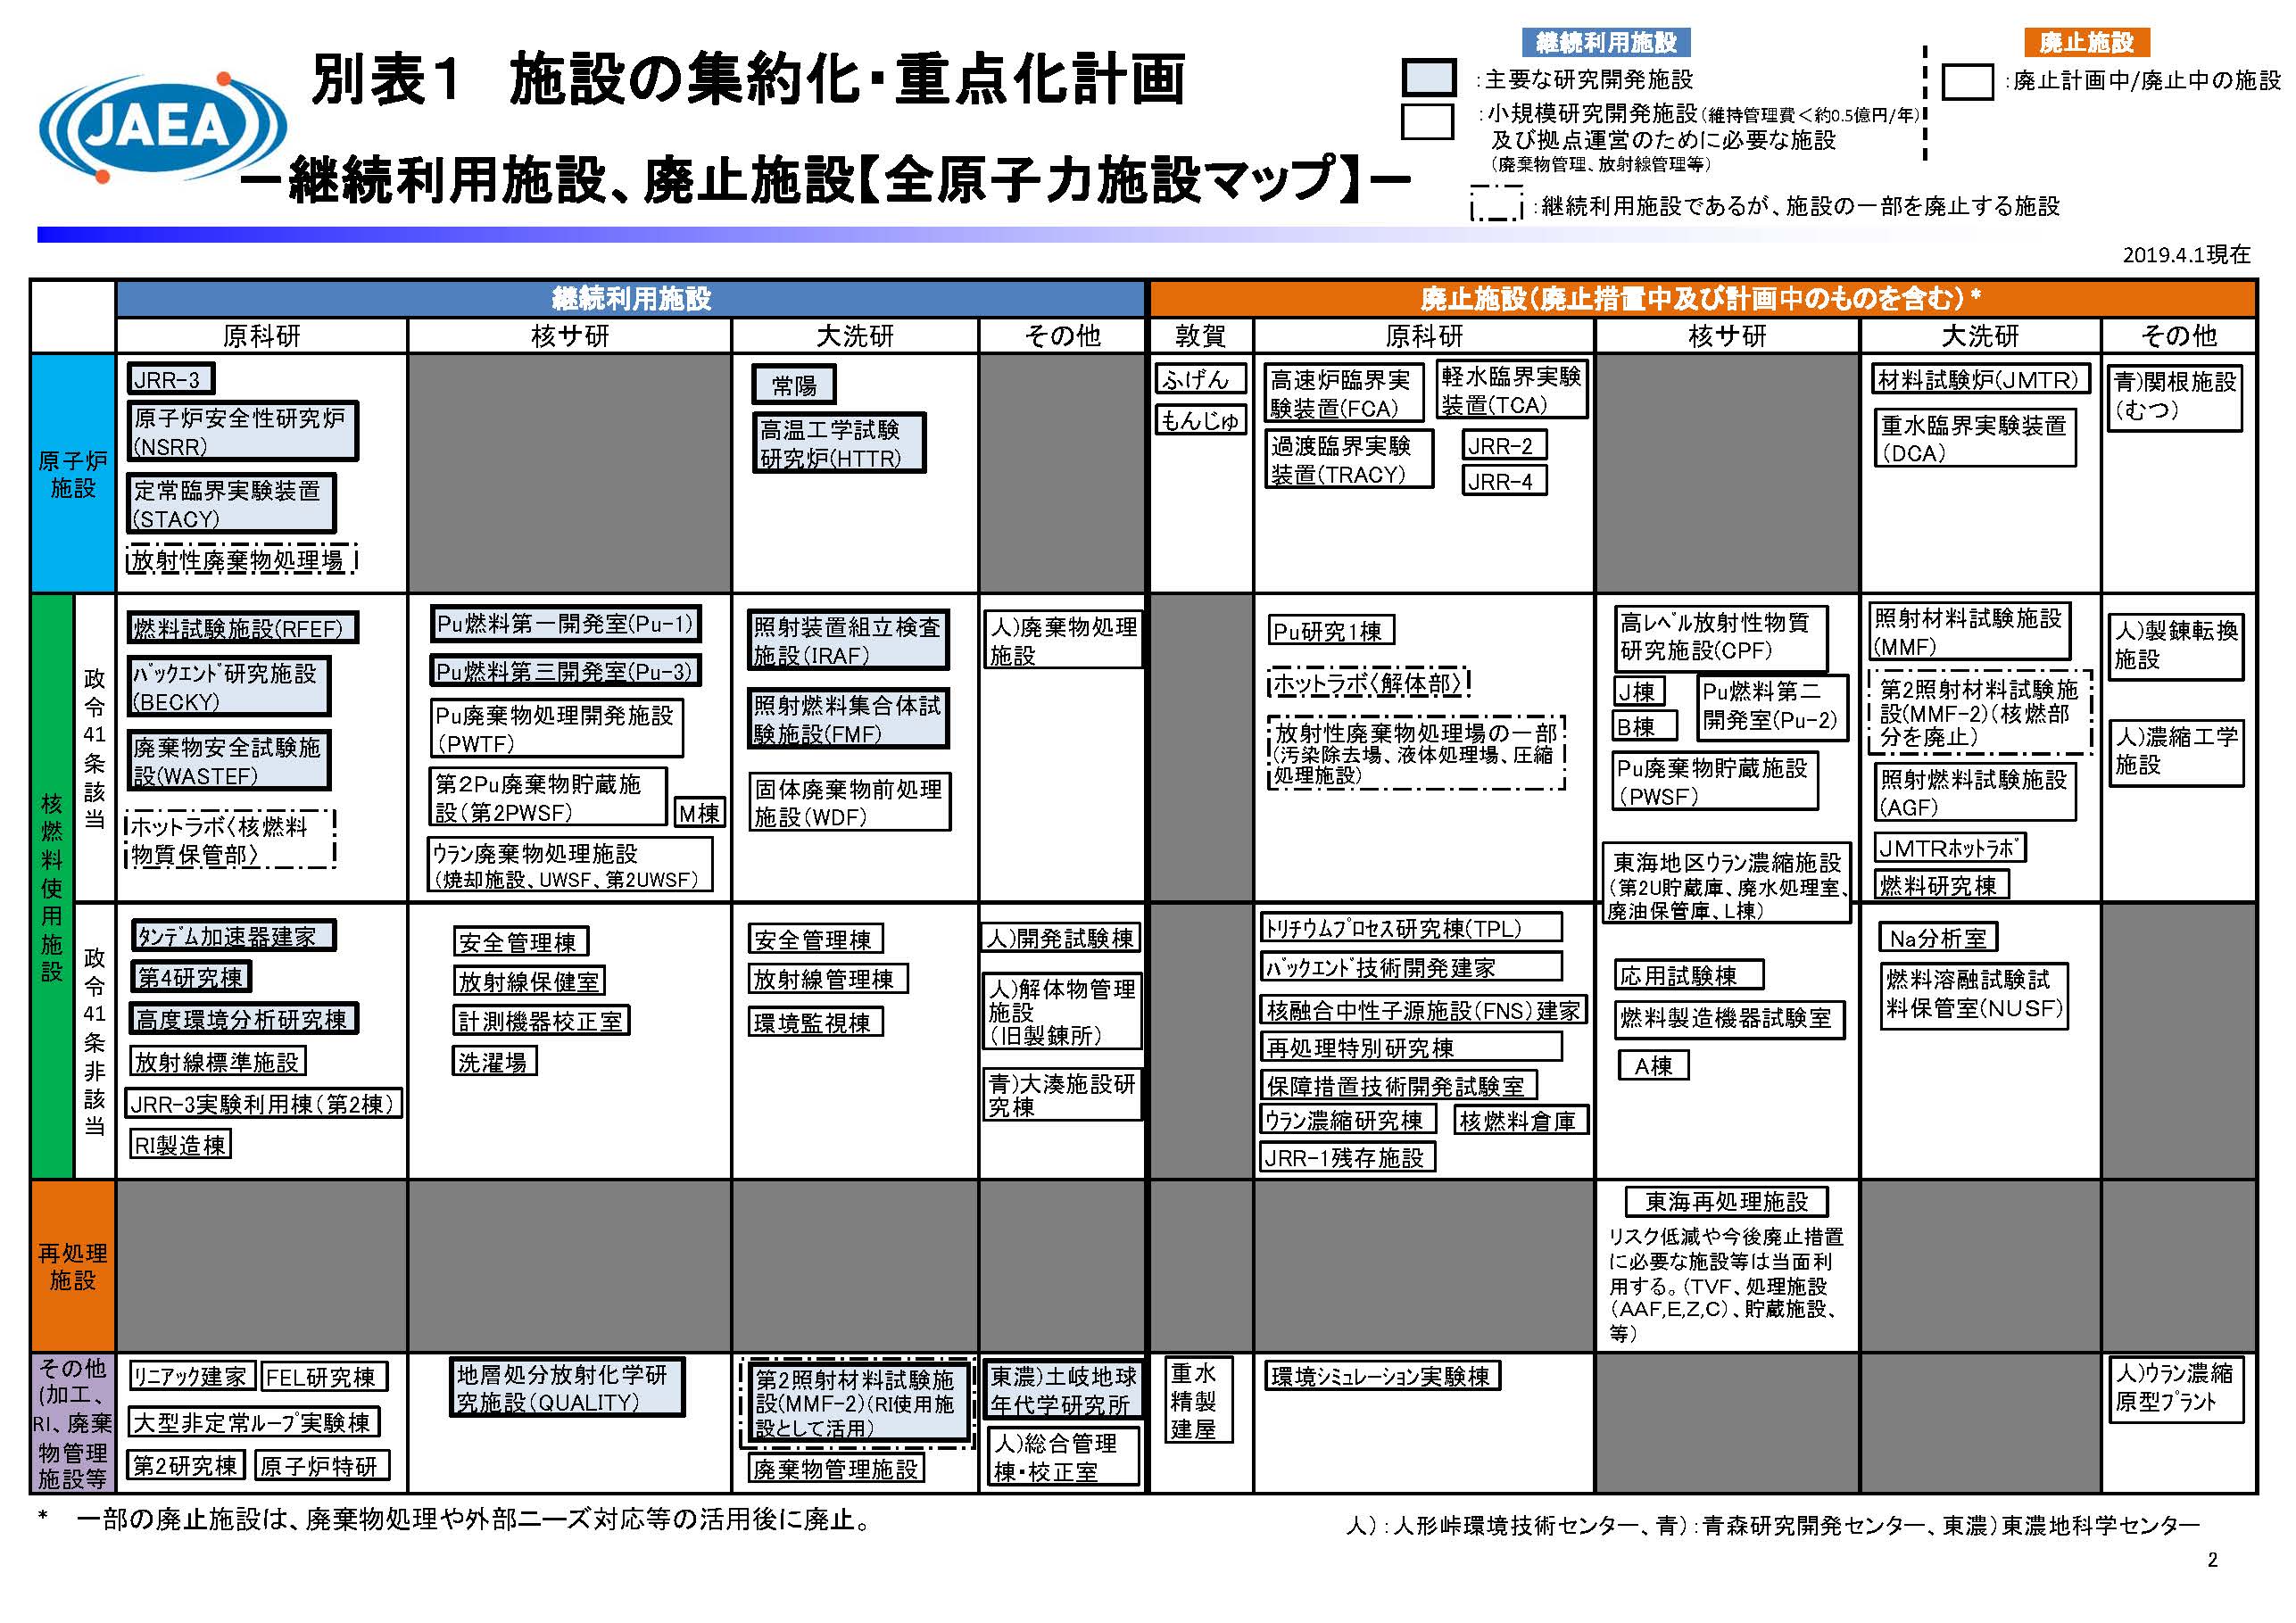 図 8-3　原子力機構における施設の集約化・重点化計画